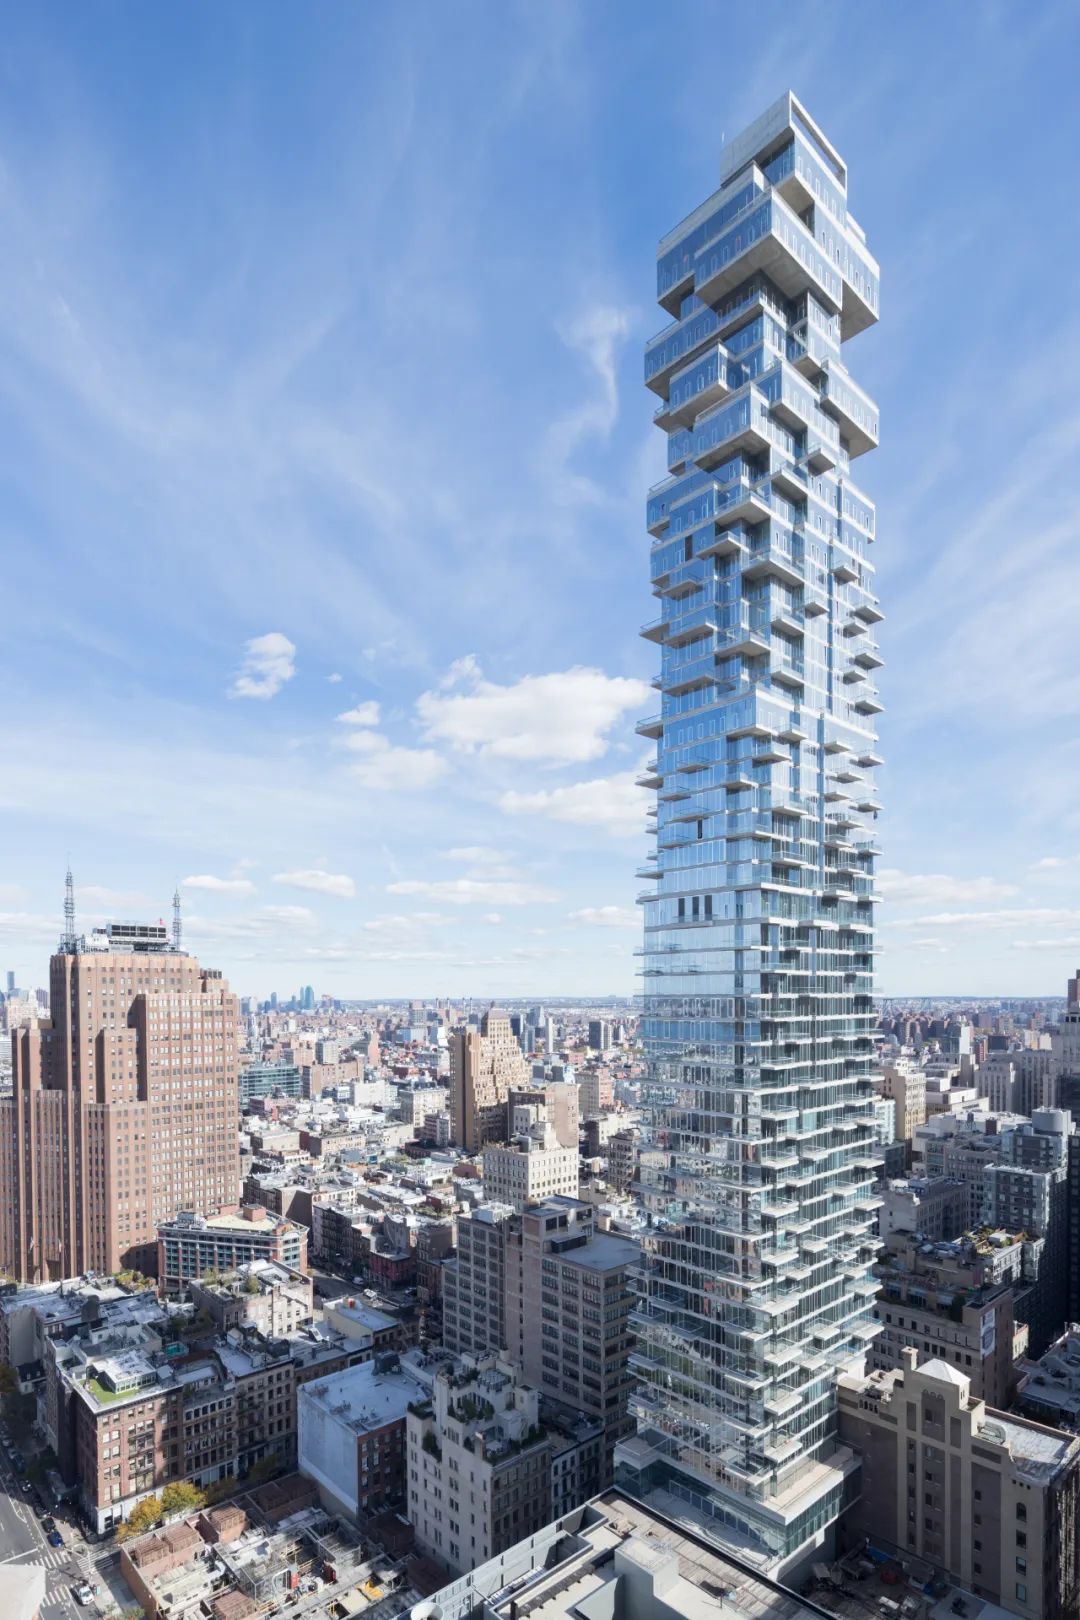 瑞士建築師 Herzog & de Meuron ，打破了呆板的傳統立面，以不規則堆疊方塊的方式，在紐約設計其第一幢摩天集合住宅「56 Leonard Street 」，被Curbed紐約網站評為過去十年來紐約市最為重要的十座建築之一